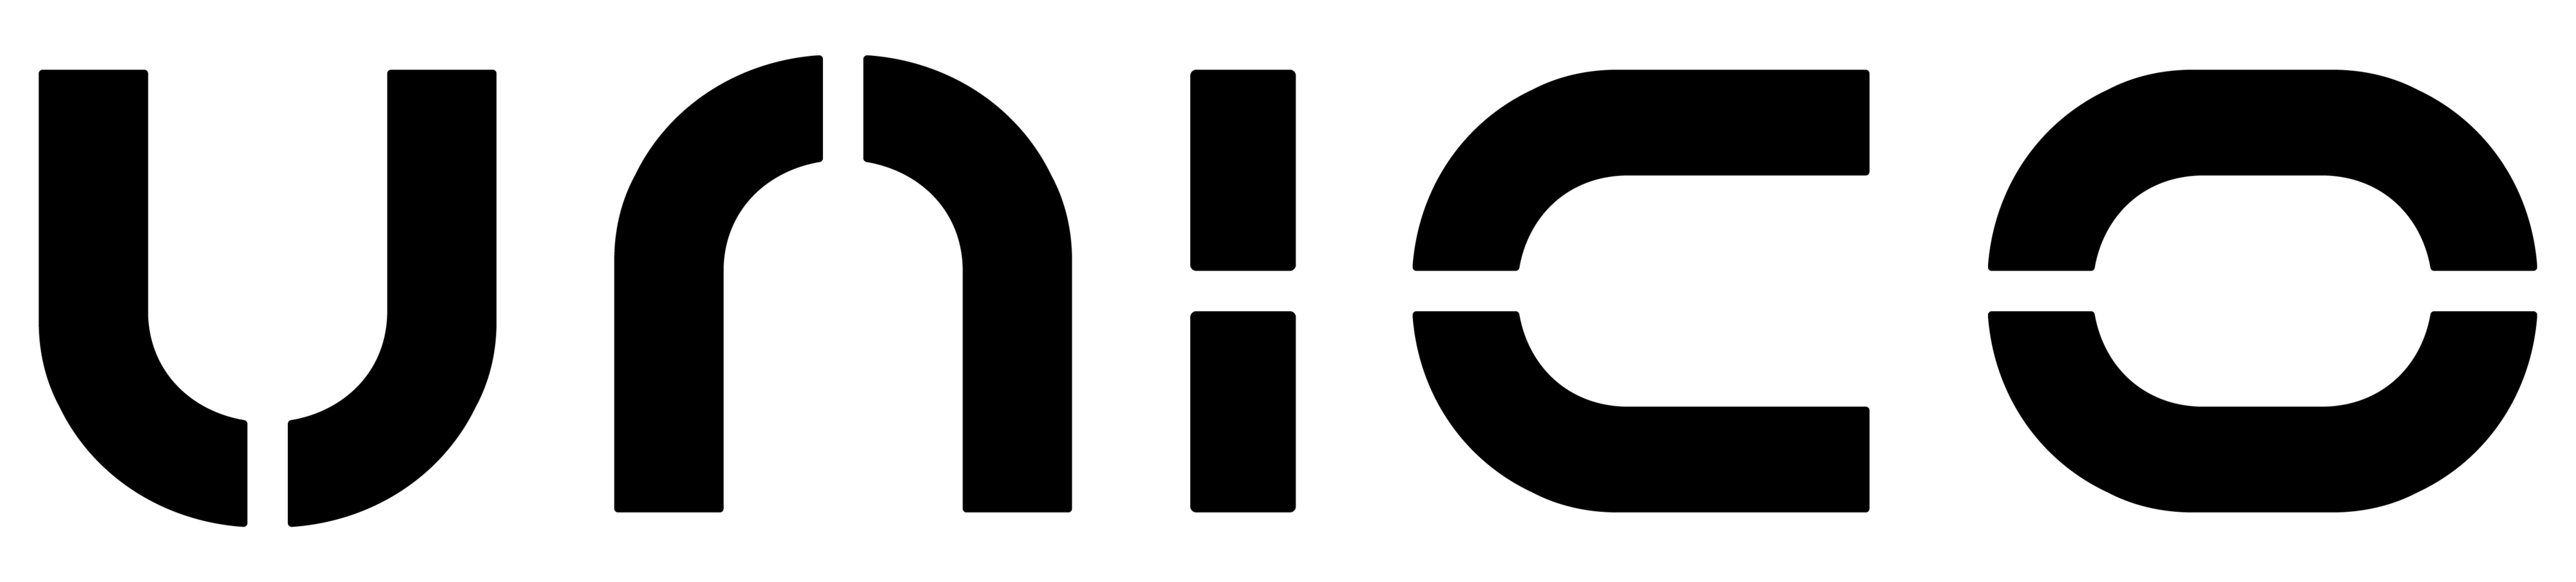 Unico-logo-black-RGB